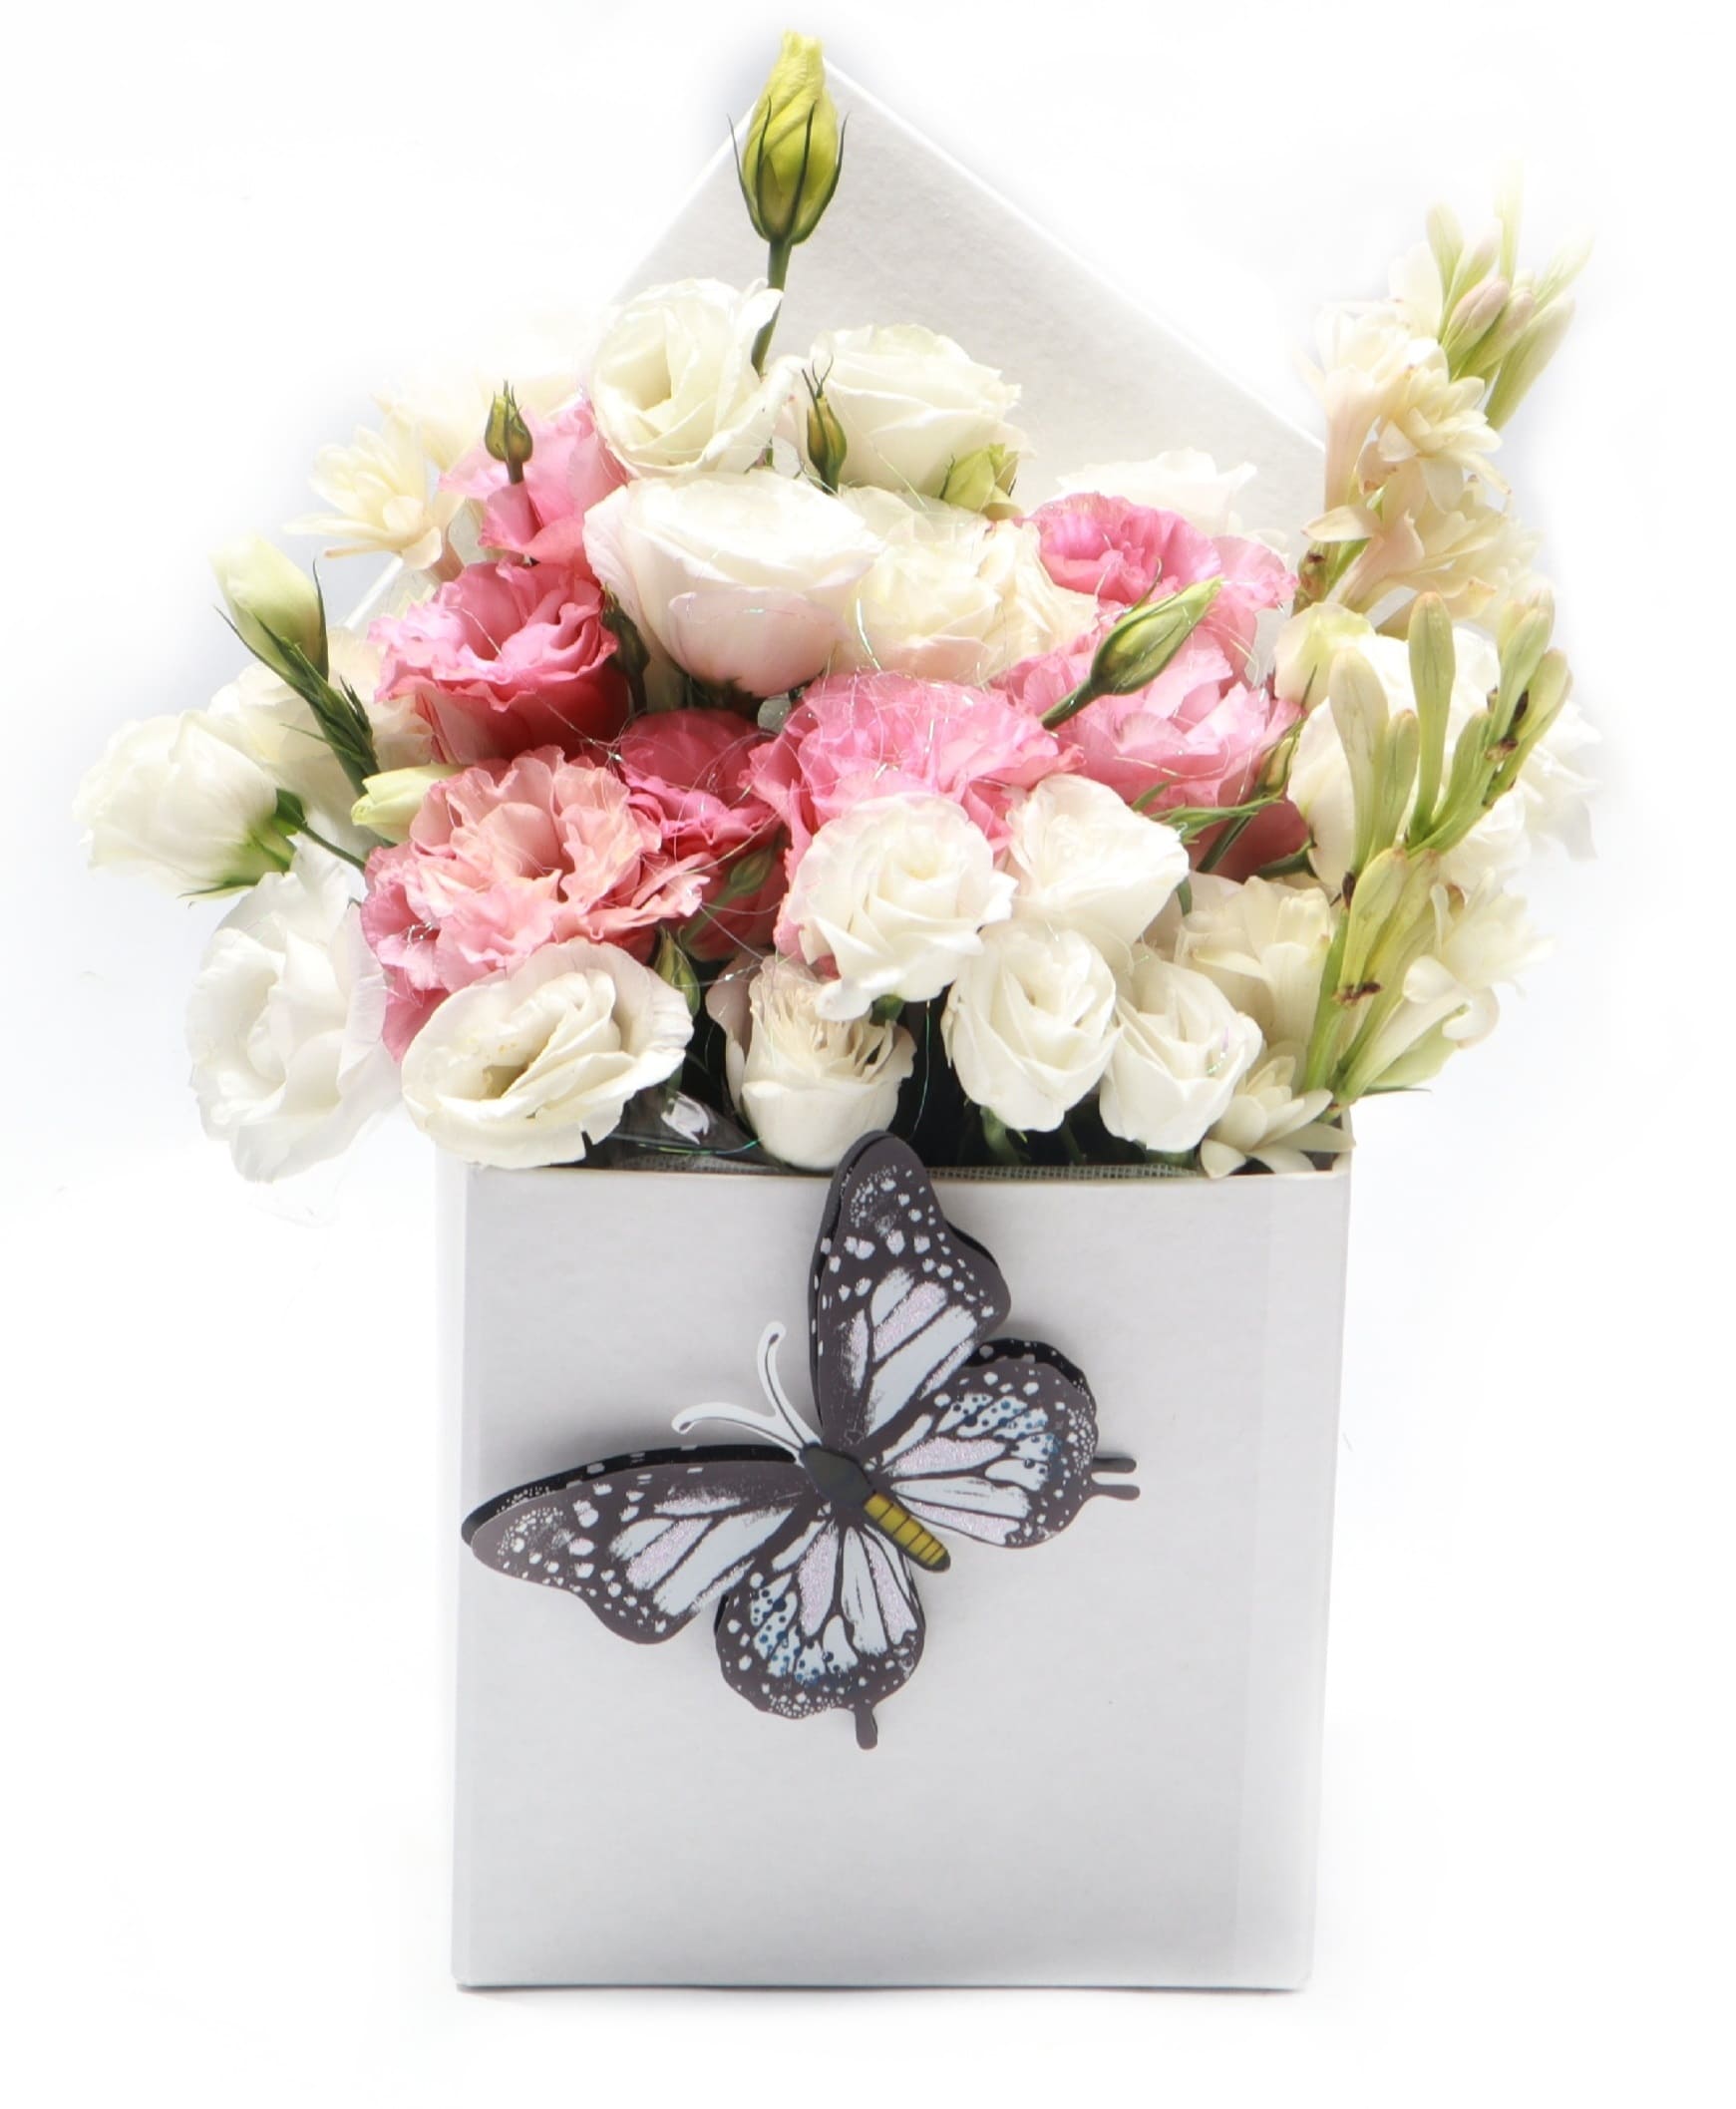 Imagen de Sentimientos encontrados Descripcion: Caja de lisuanthus con nardos perfumados brillos mariposa